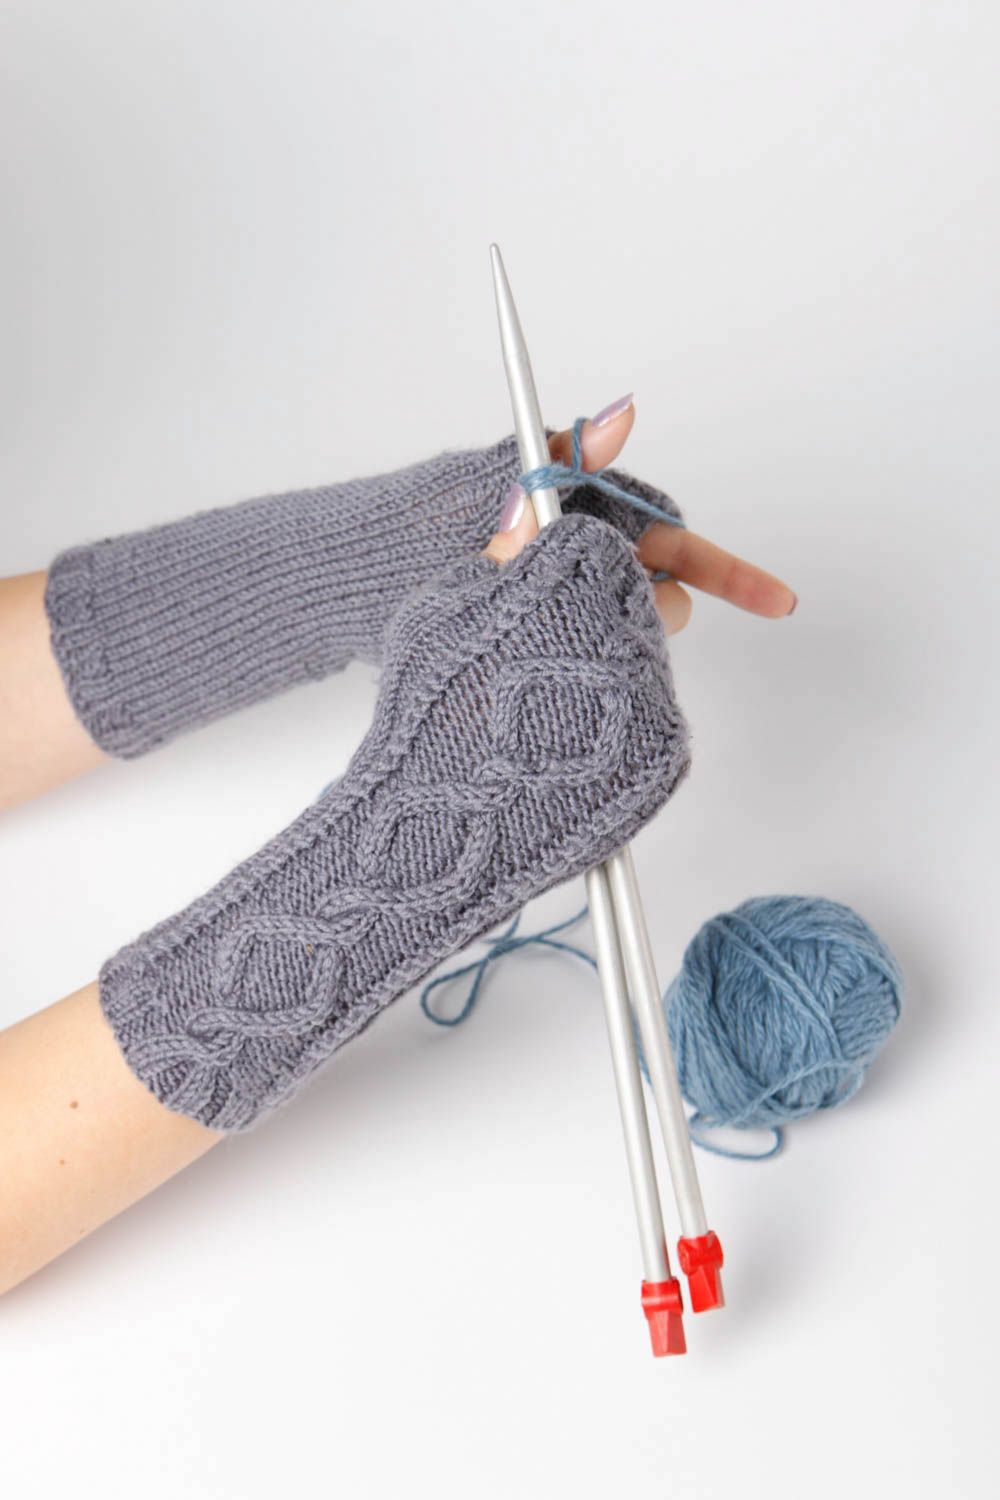 Handmade knitted mittens winter mittens winter accessories designer mittens photo 1